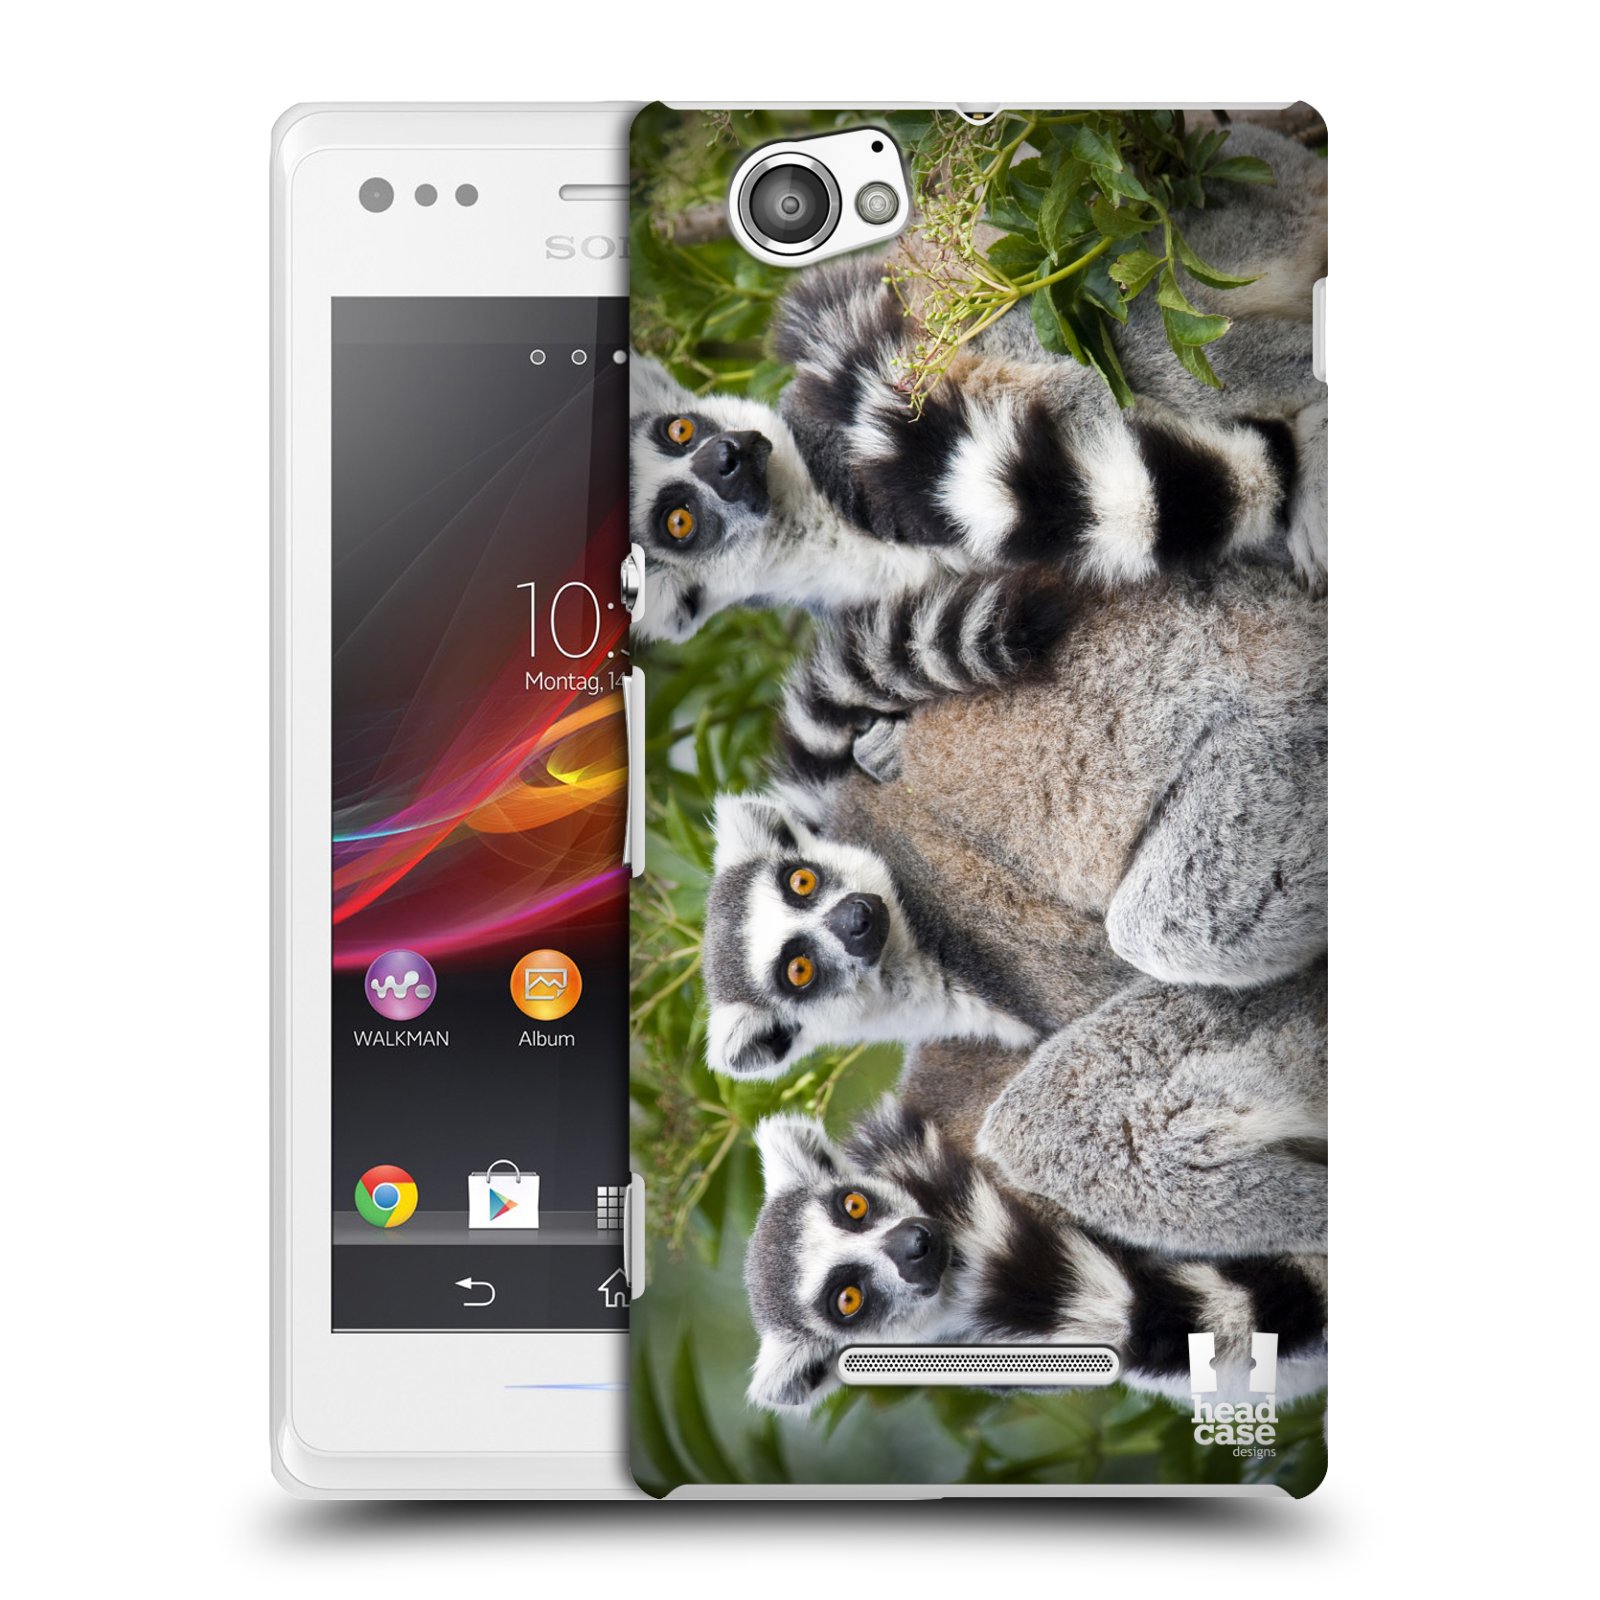 HEAD CASE plastový obal na mobil Sony Xperia M vzor slavná zvířata foto lemur